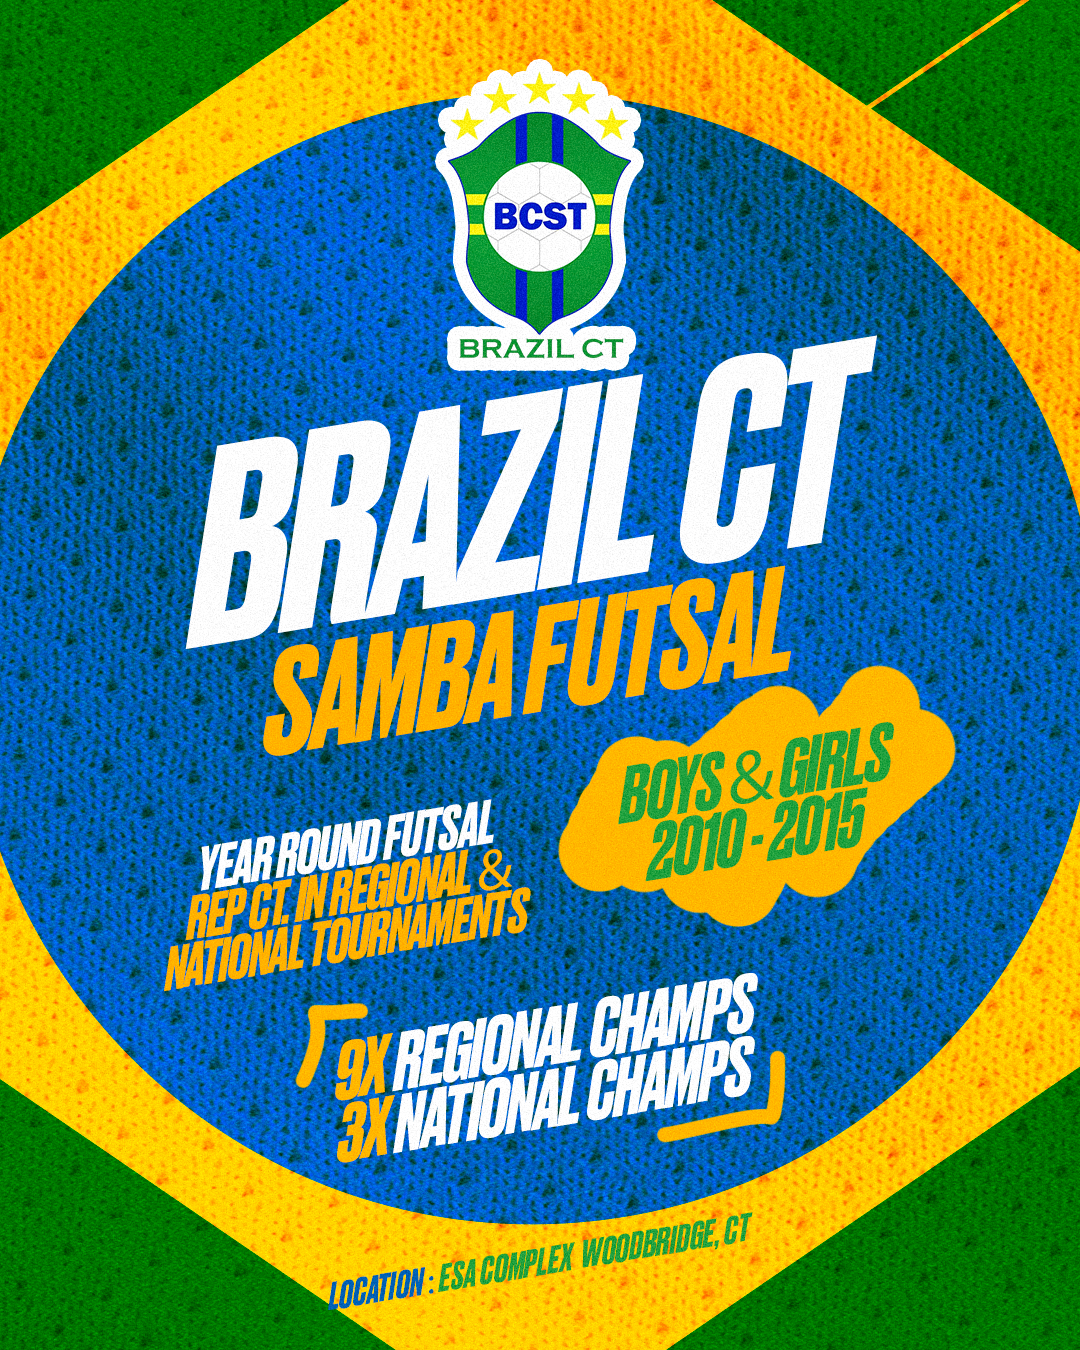 Brazil CT - Samba Futsal